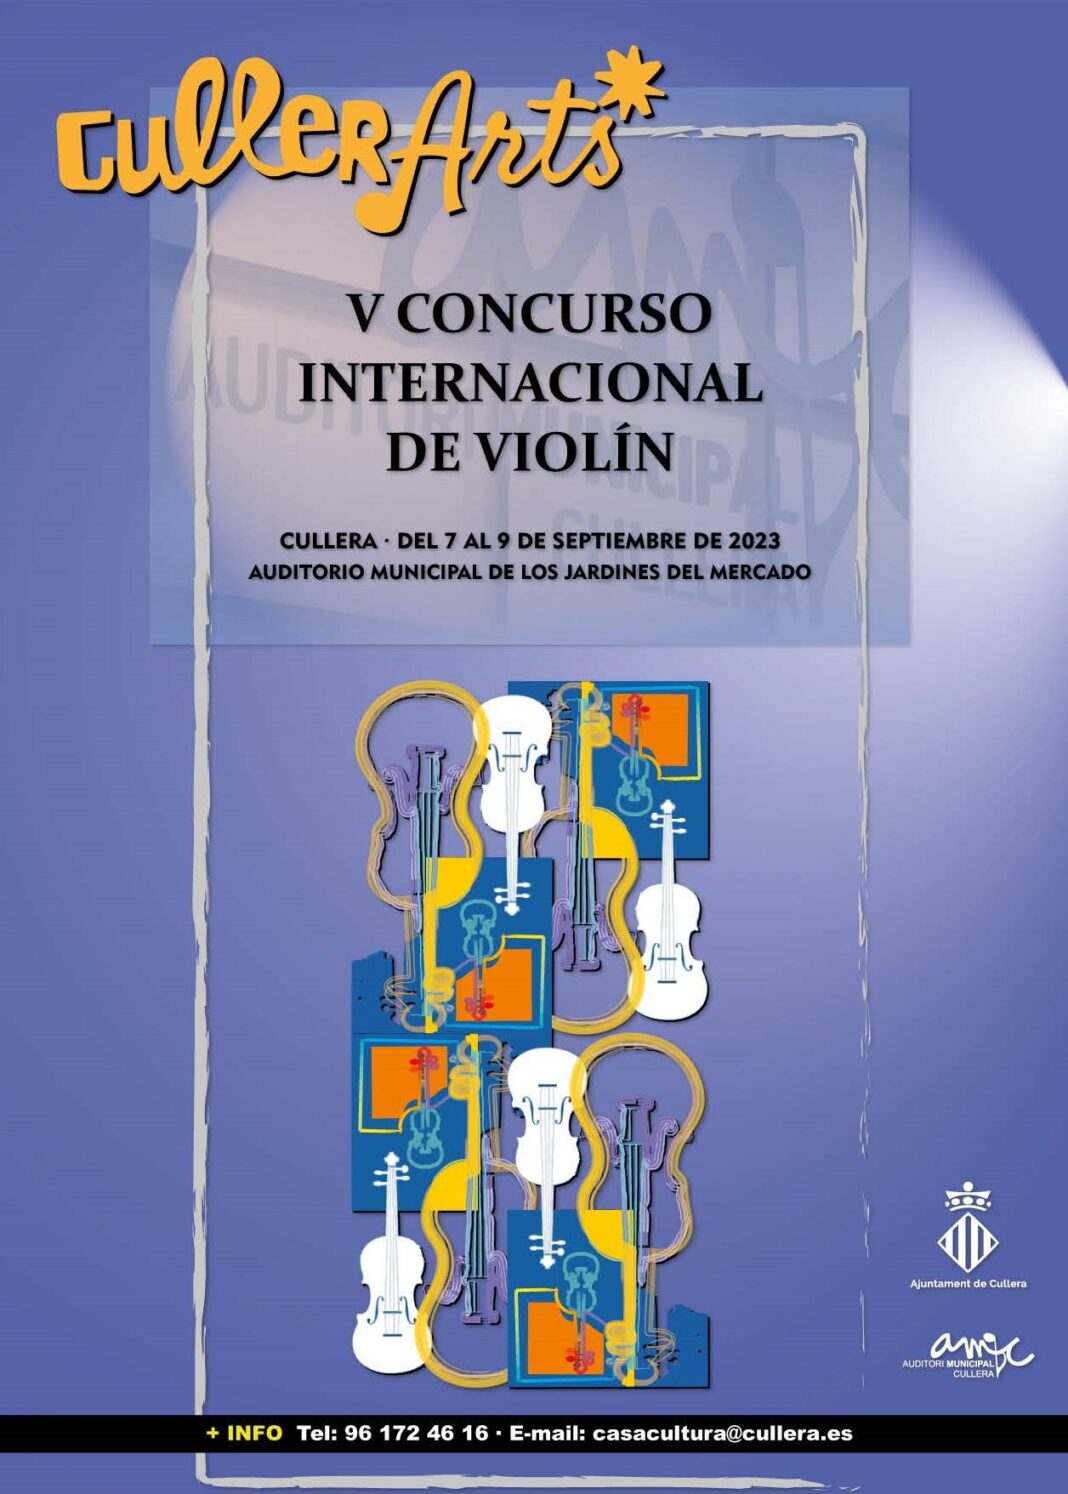 Cullera pone en marcha la quinta edición del Concurso Internacional de Violín